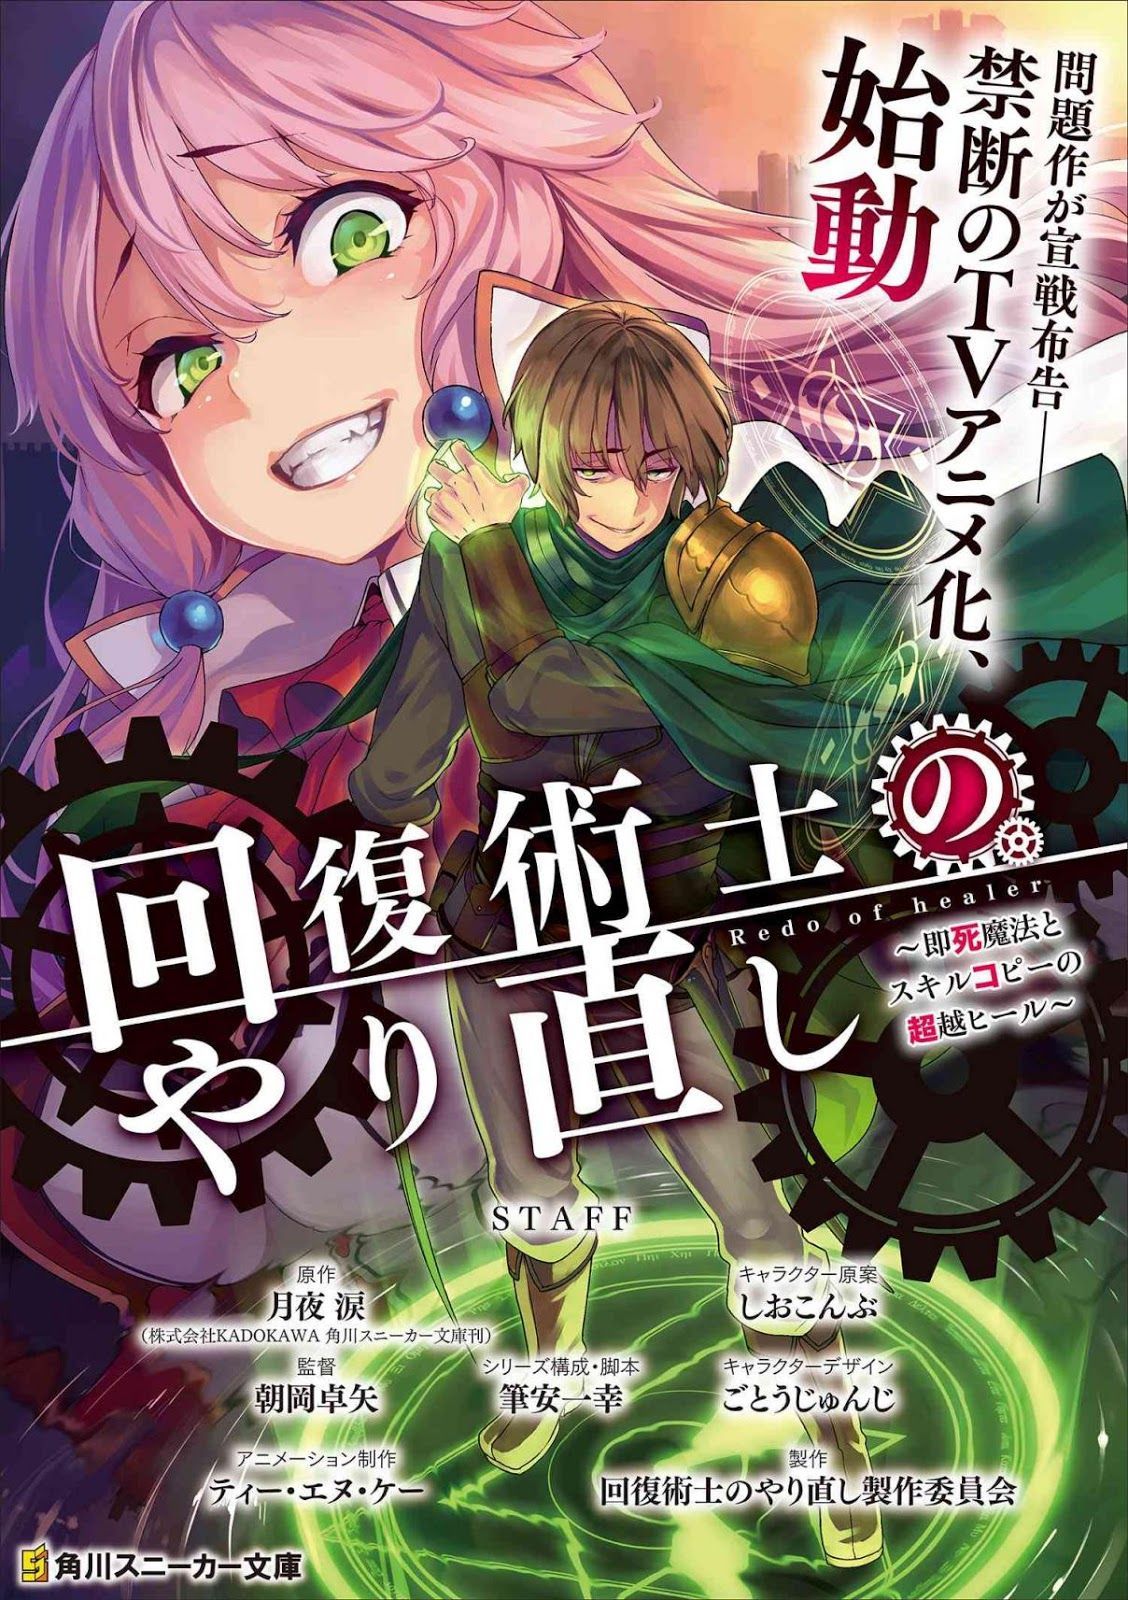 Kaifuku Jutsushi No Yarinaoshi Chapter 22.2 Official Manga Online. Manga online read, Manga, Manga news